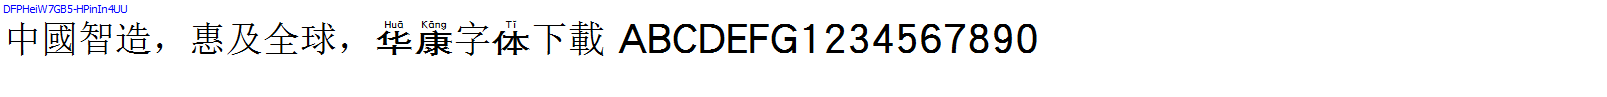 華康字體DFPHeiW7GB5-HPinIn4UU.TTF